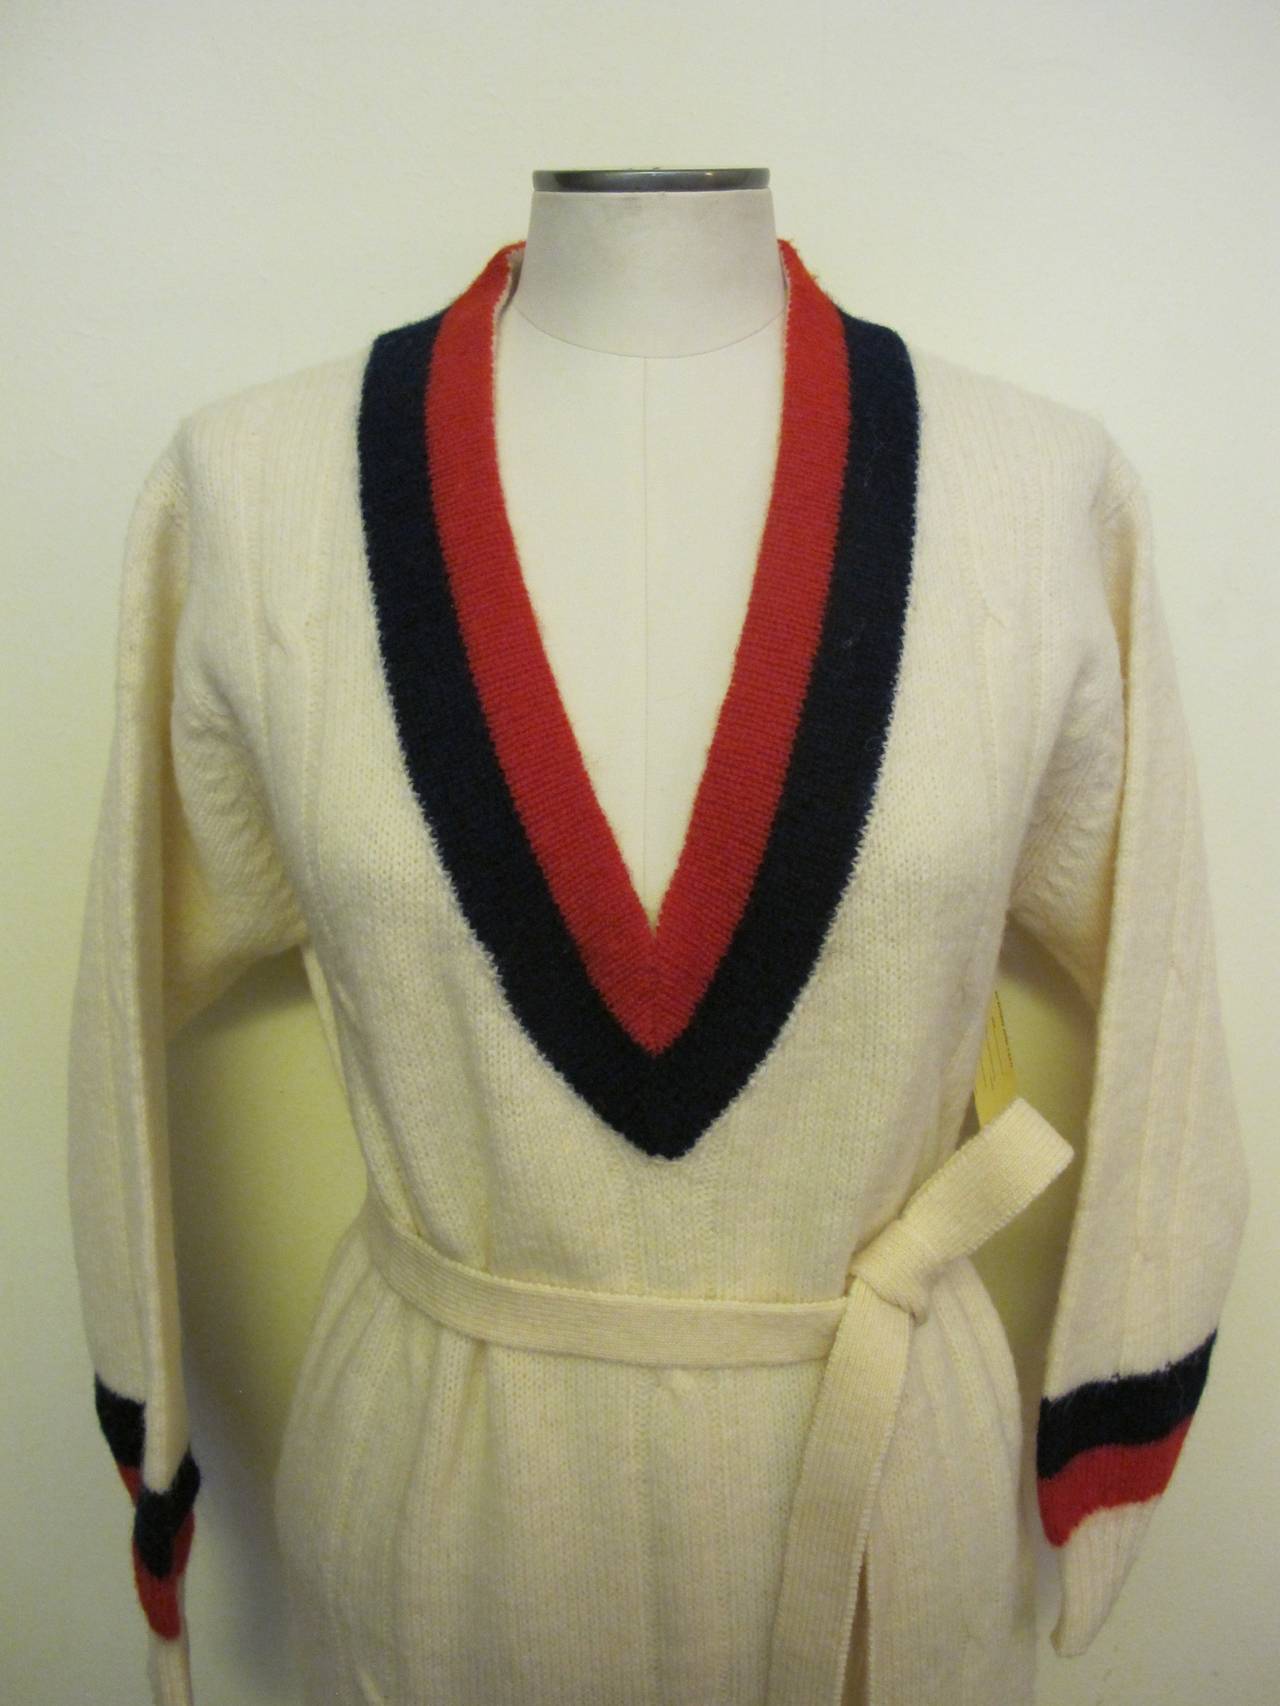 Women's New Pringle 1950's Sweater Dress for Robert Kirk, Ltd. For Sale